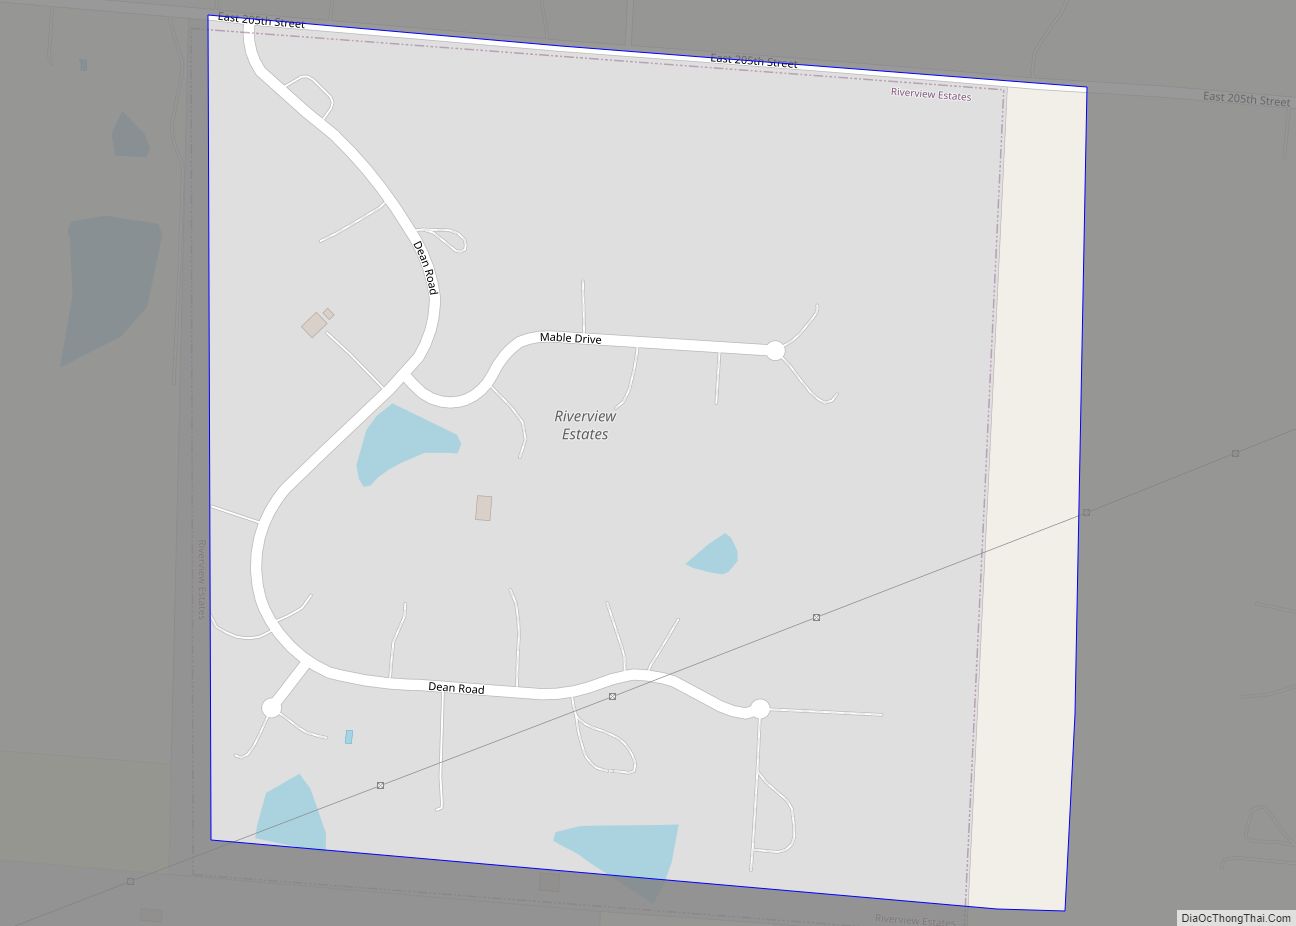 Map of Riverview Estates village